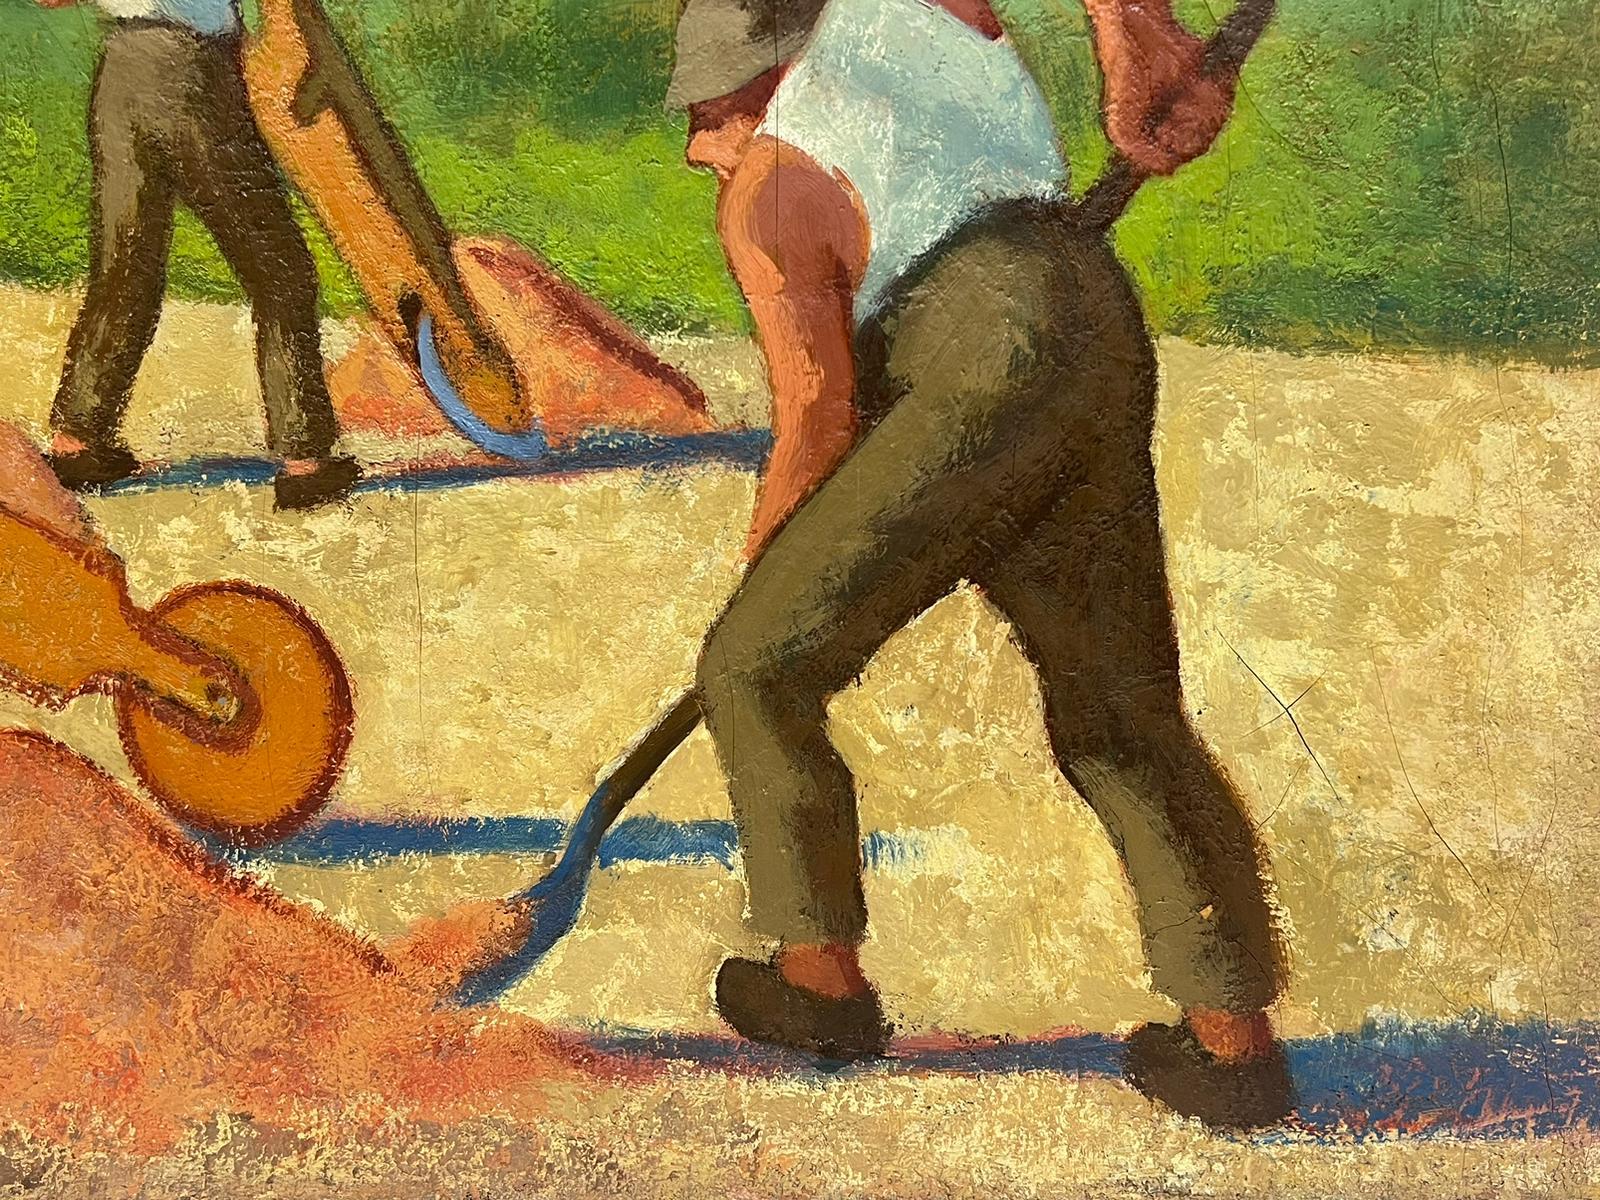 men working in the 1950s